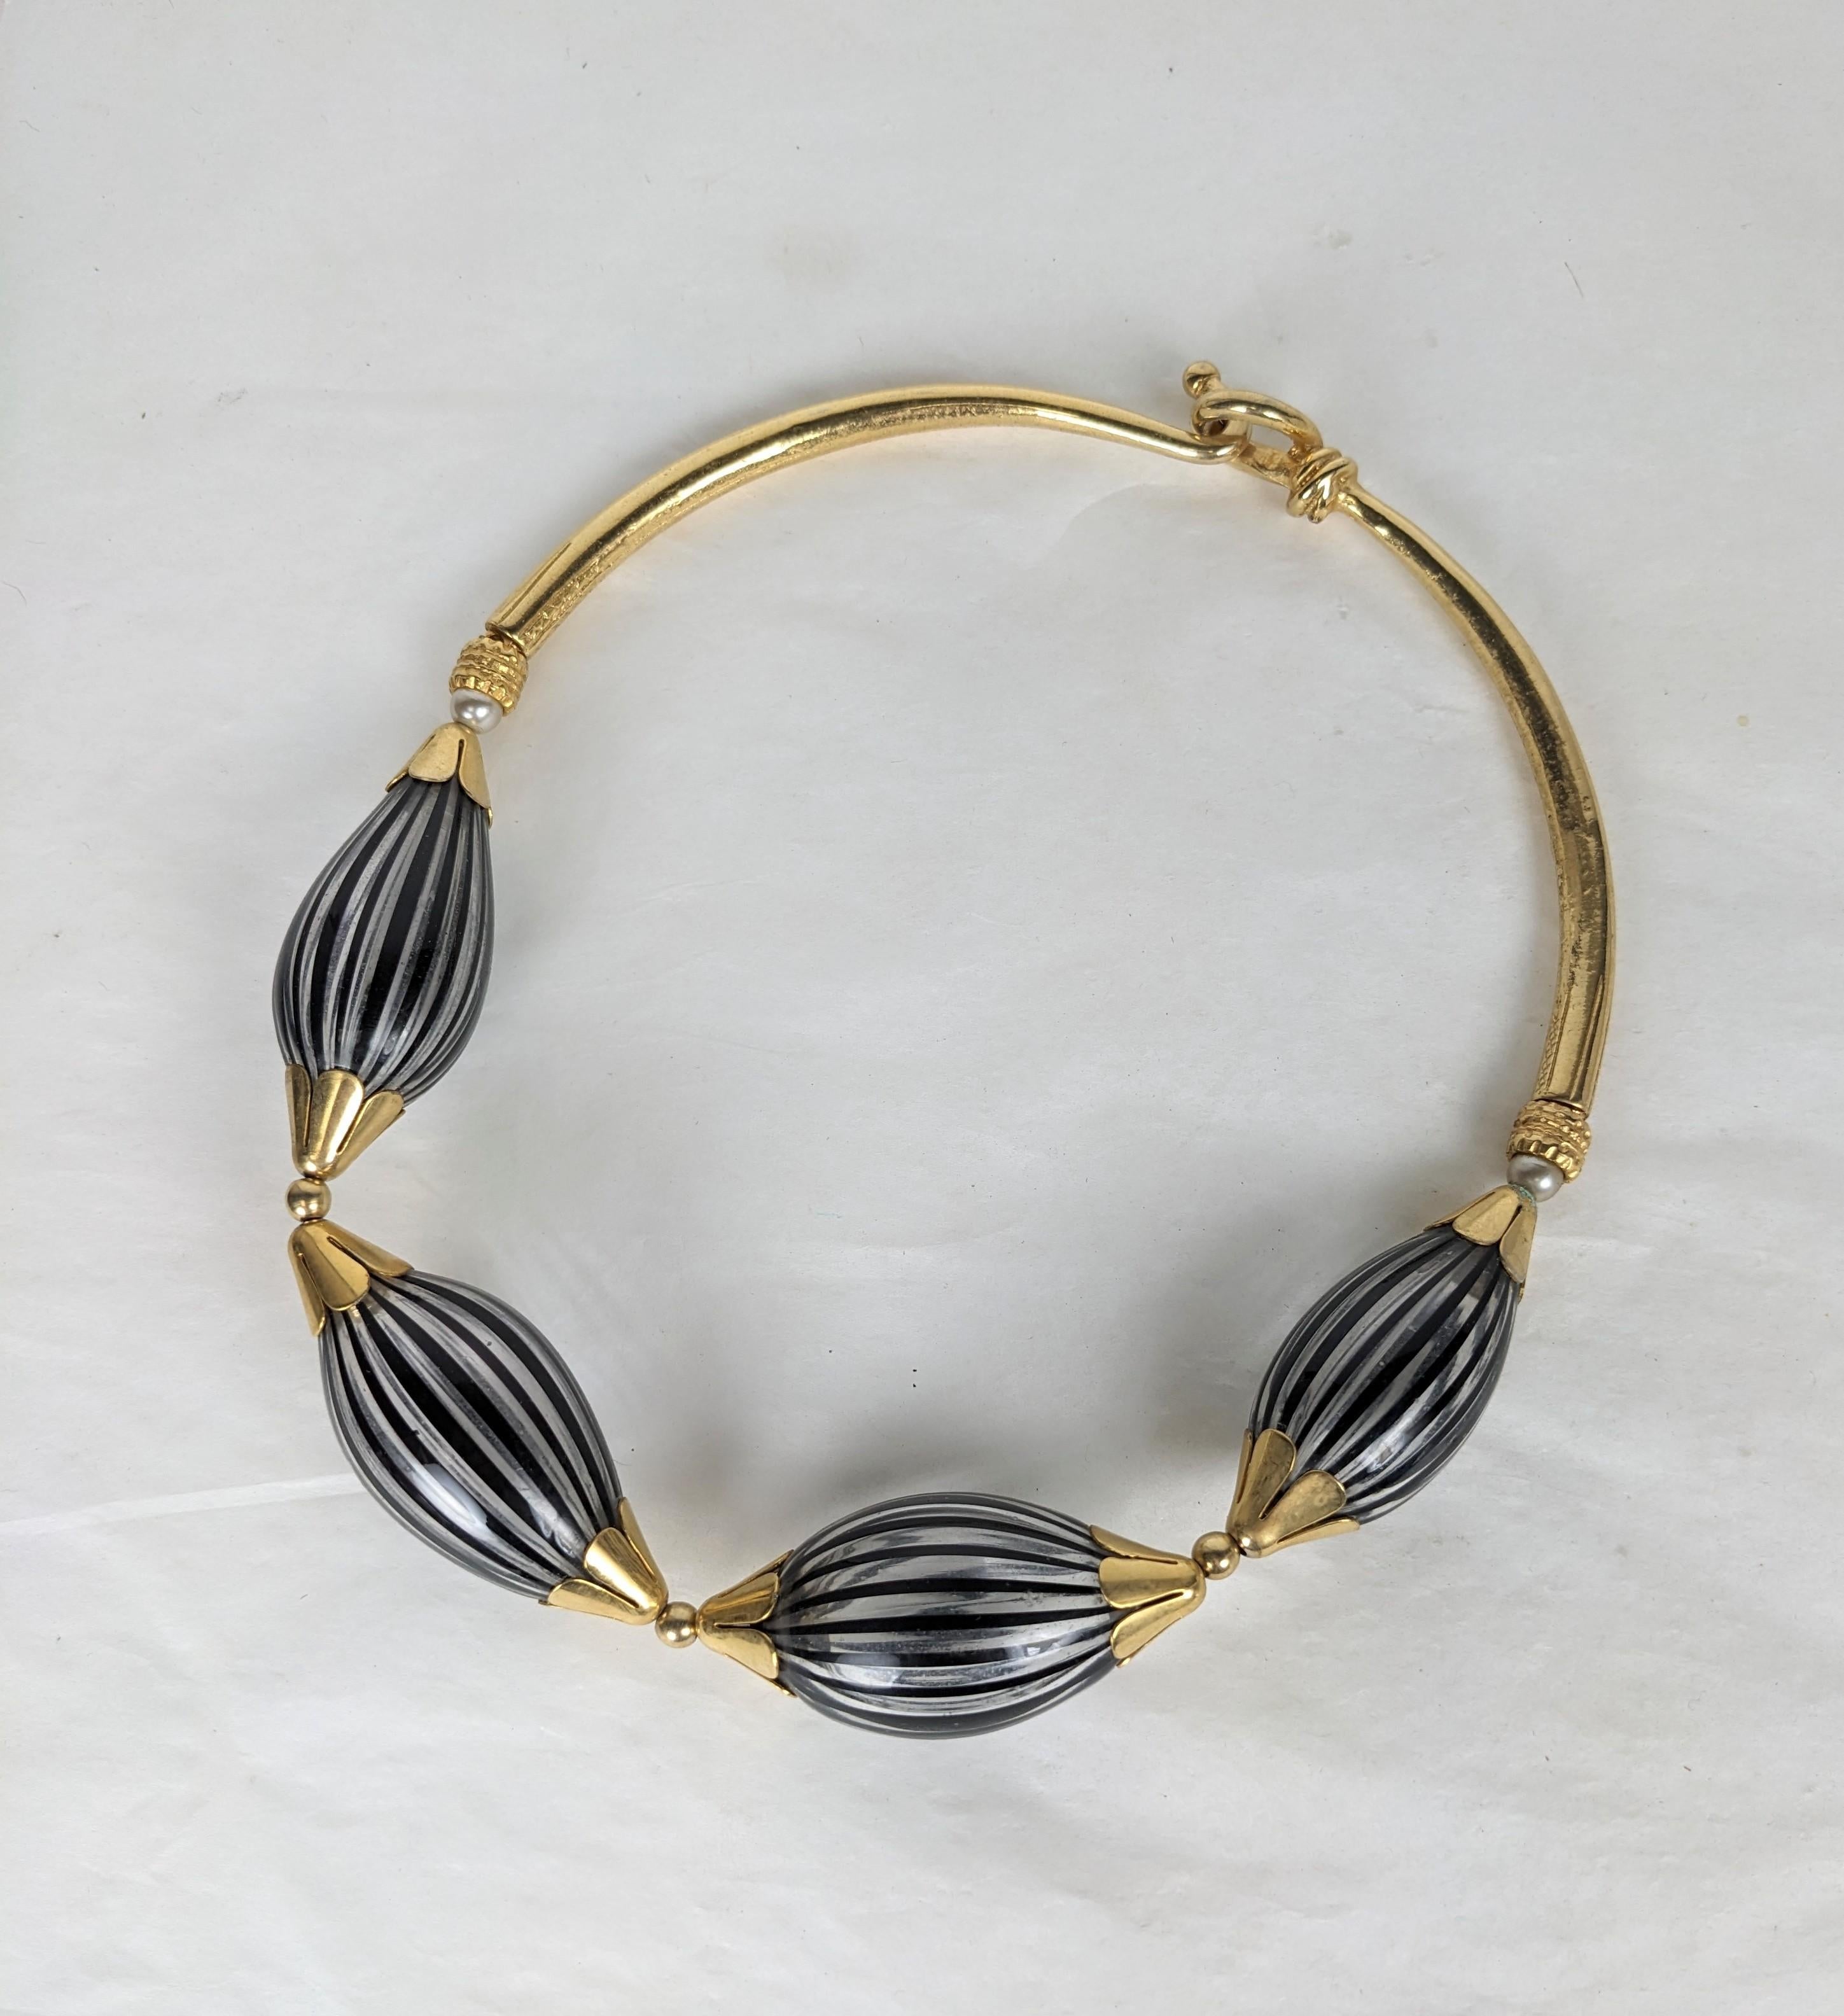 Collier artisanal français inhabituel avec des perles en verre vénitien datant des années 1980. Grosses perles en verre soufflé avec des stries noires et blanches terminées par des capuchons floraux dorés et un collier rigide au dos, mélangées à des